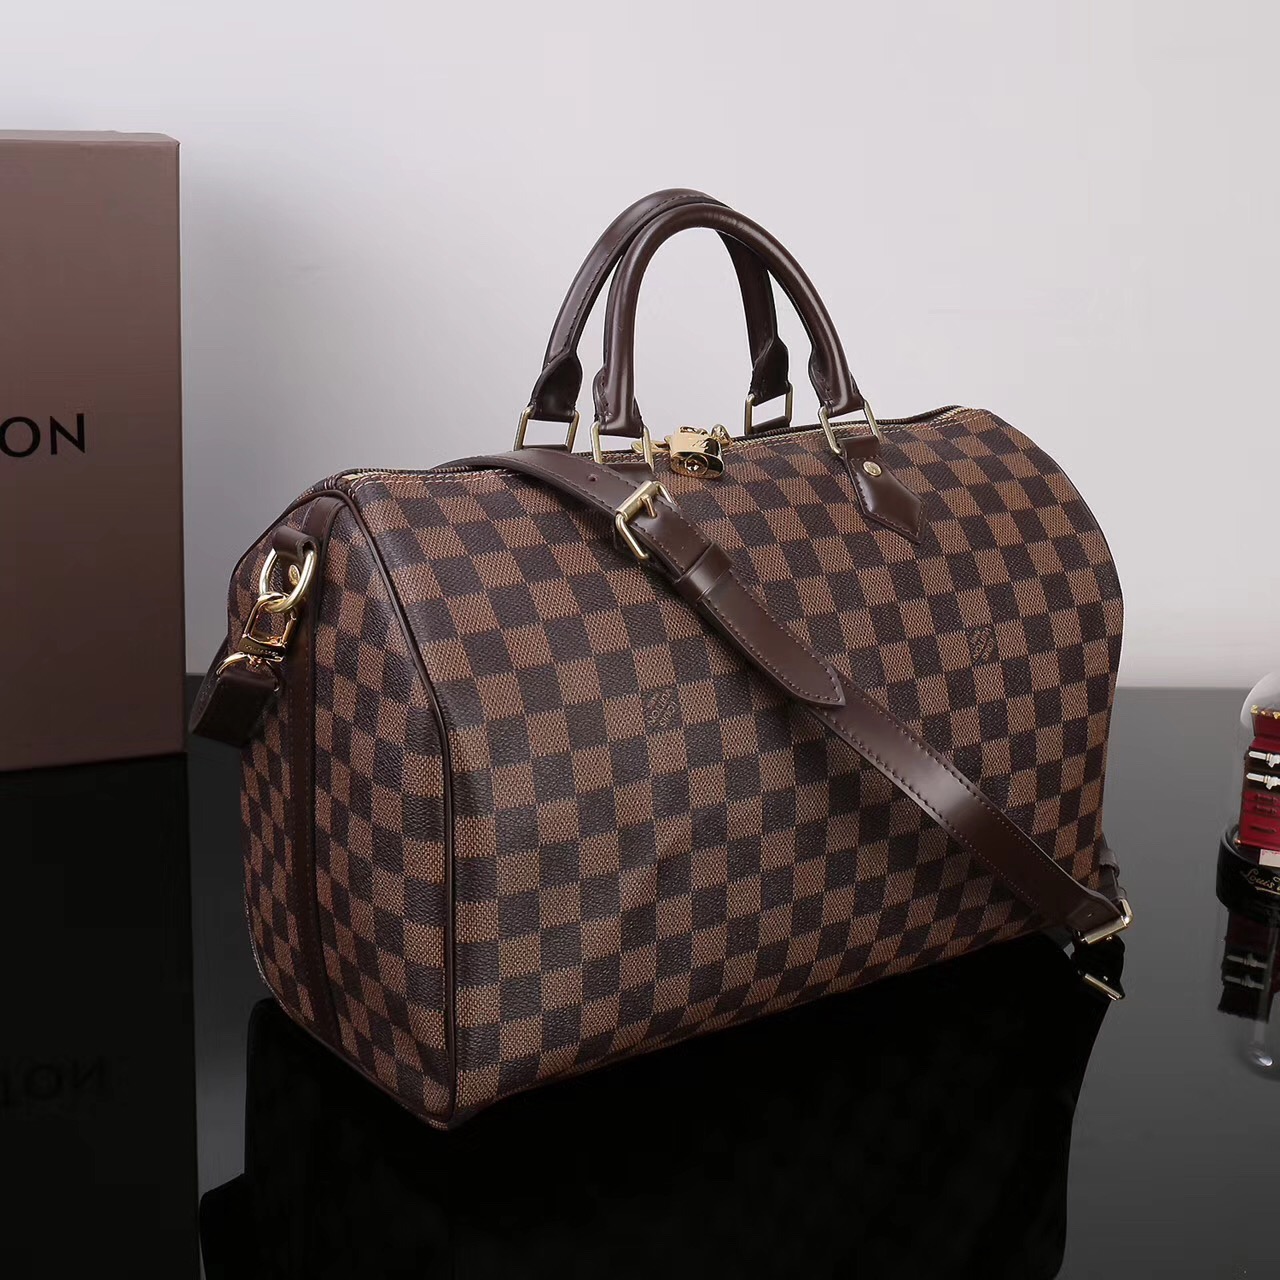 LV Louis Vuitton Speedy N41366 35 bags Damier Handbags